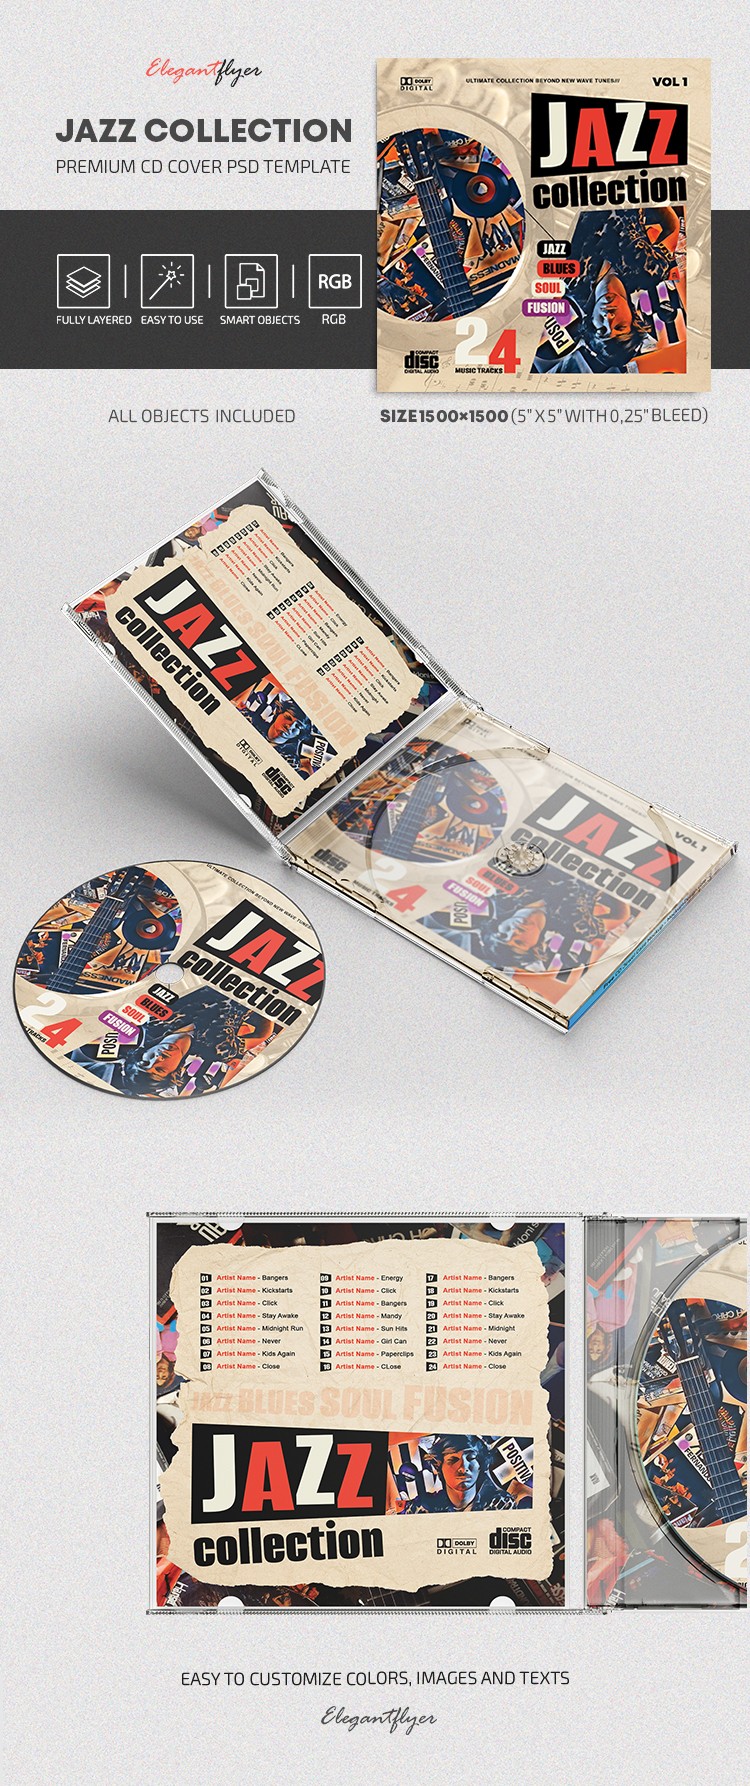 Capa do CD da coleção de Jazz by ElegantFlyer